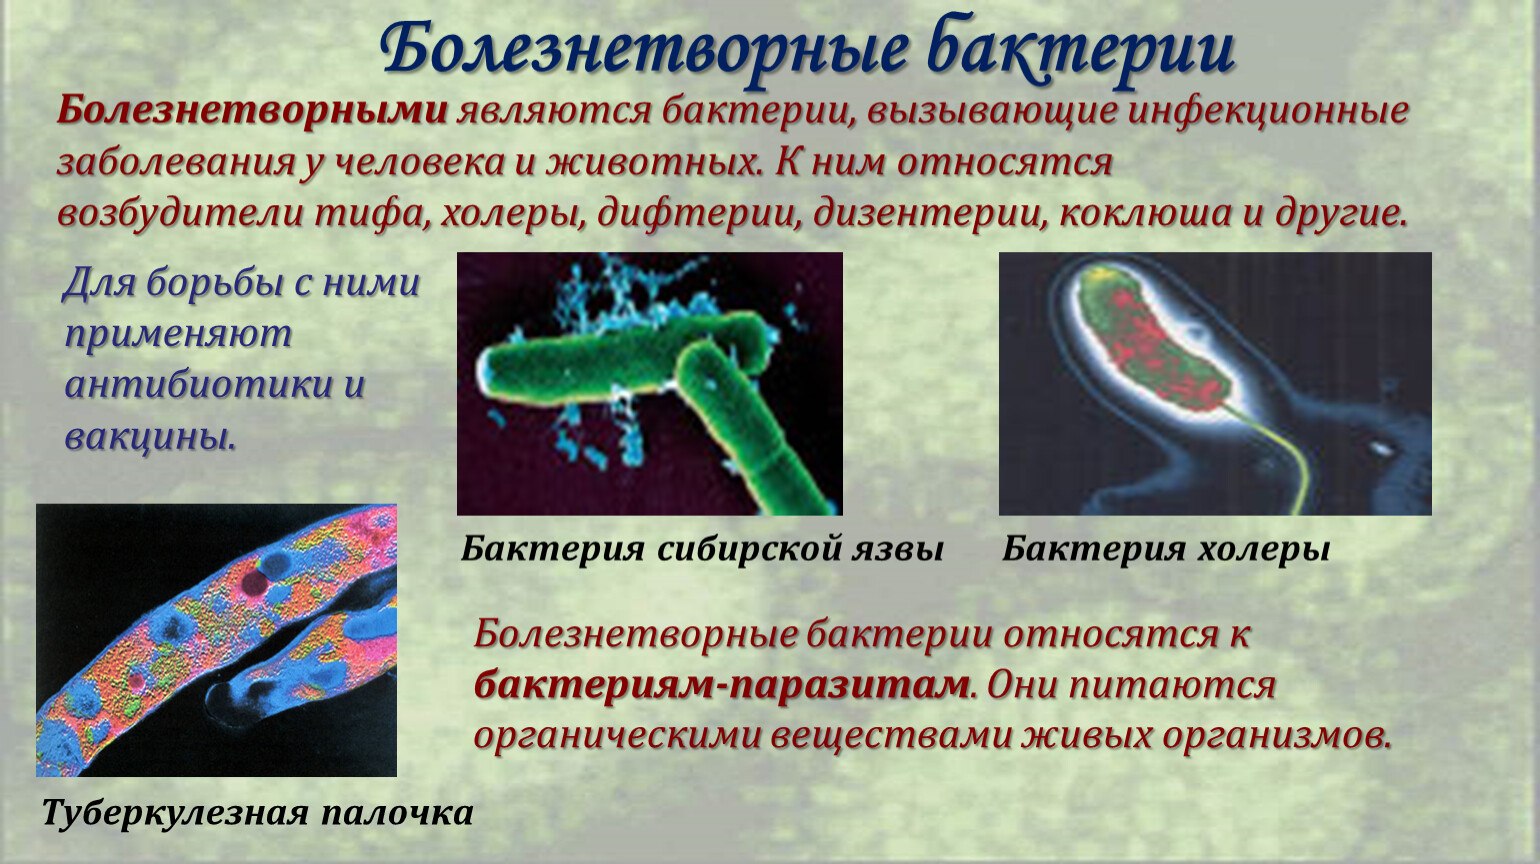 Заболевания вызванные различными бактериями. Болезнетворные бактерии доклад. Сообщение о болезнетворных бактериях. Болезнетворные бактерии патогенные. Болезни вызванные болезнетворными бактериями.